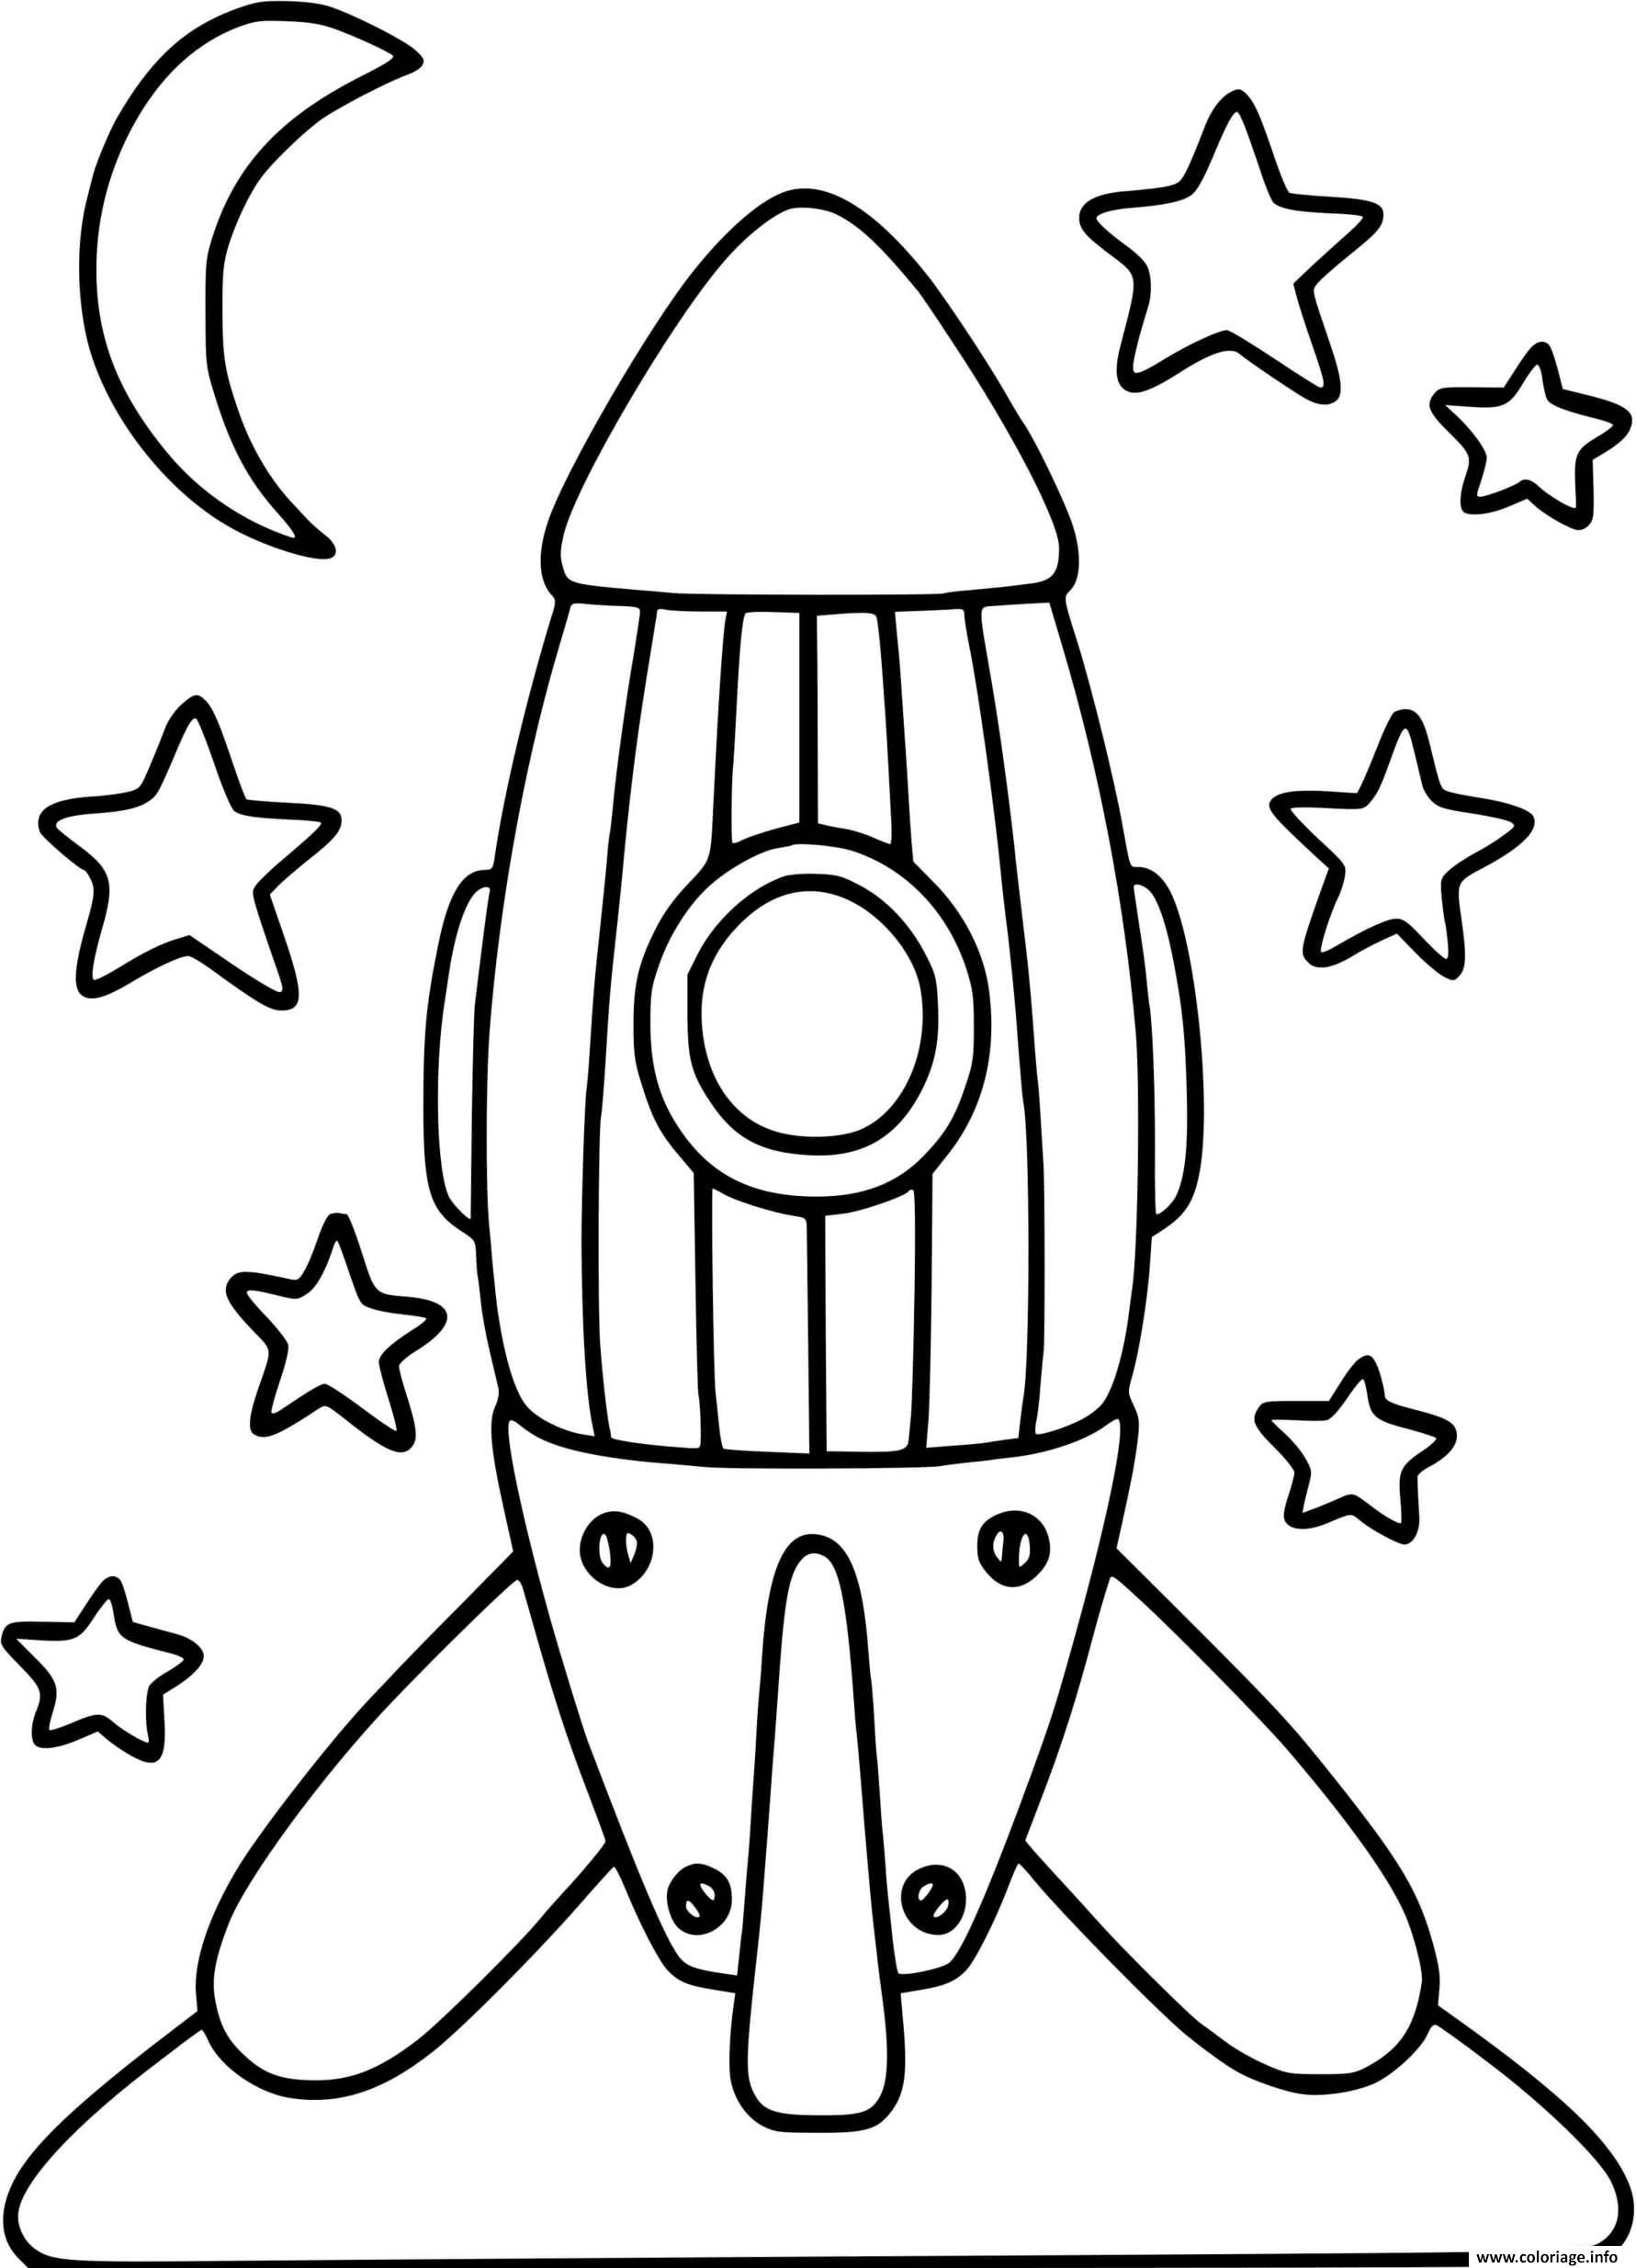 Задания ко дню космонавтики. Ракета раскраска. Ракета раскраска для детей. Космическая ракета раскраска. Раскраска ракета в космосе для детей.